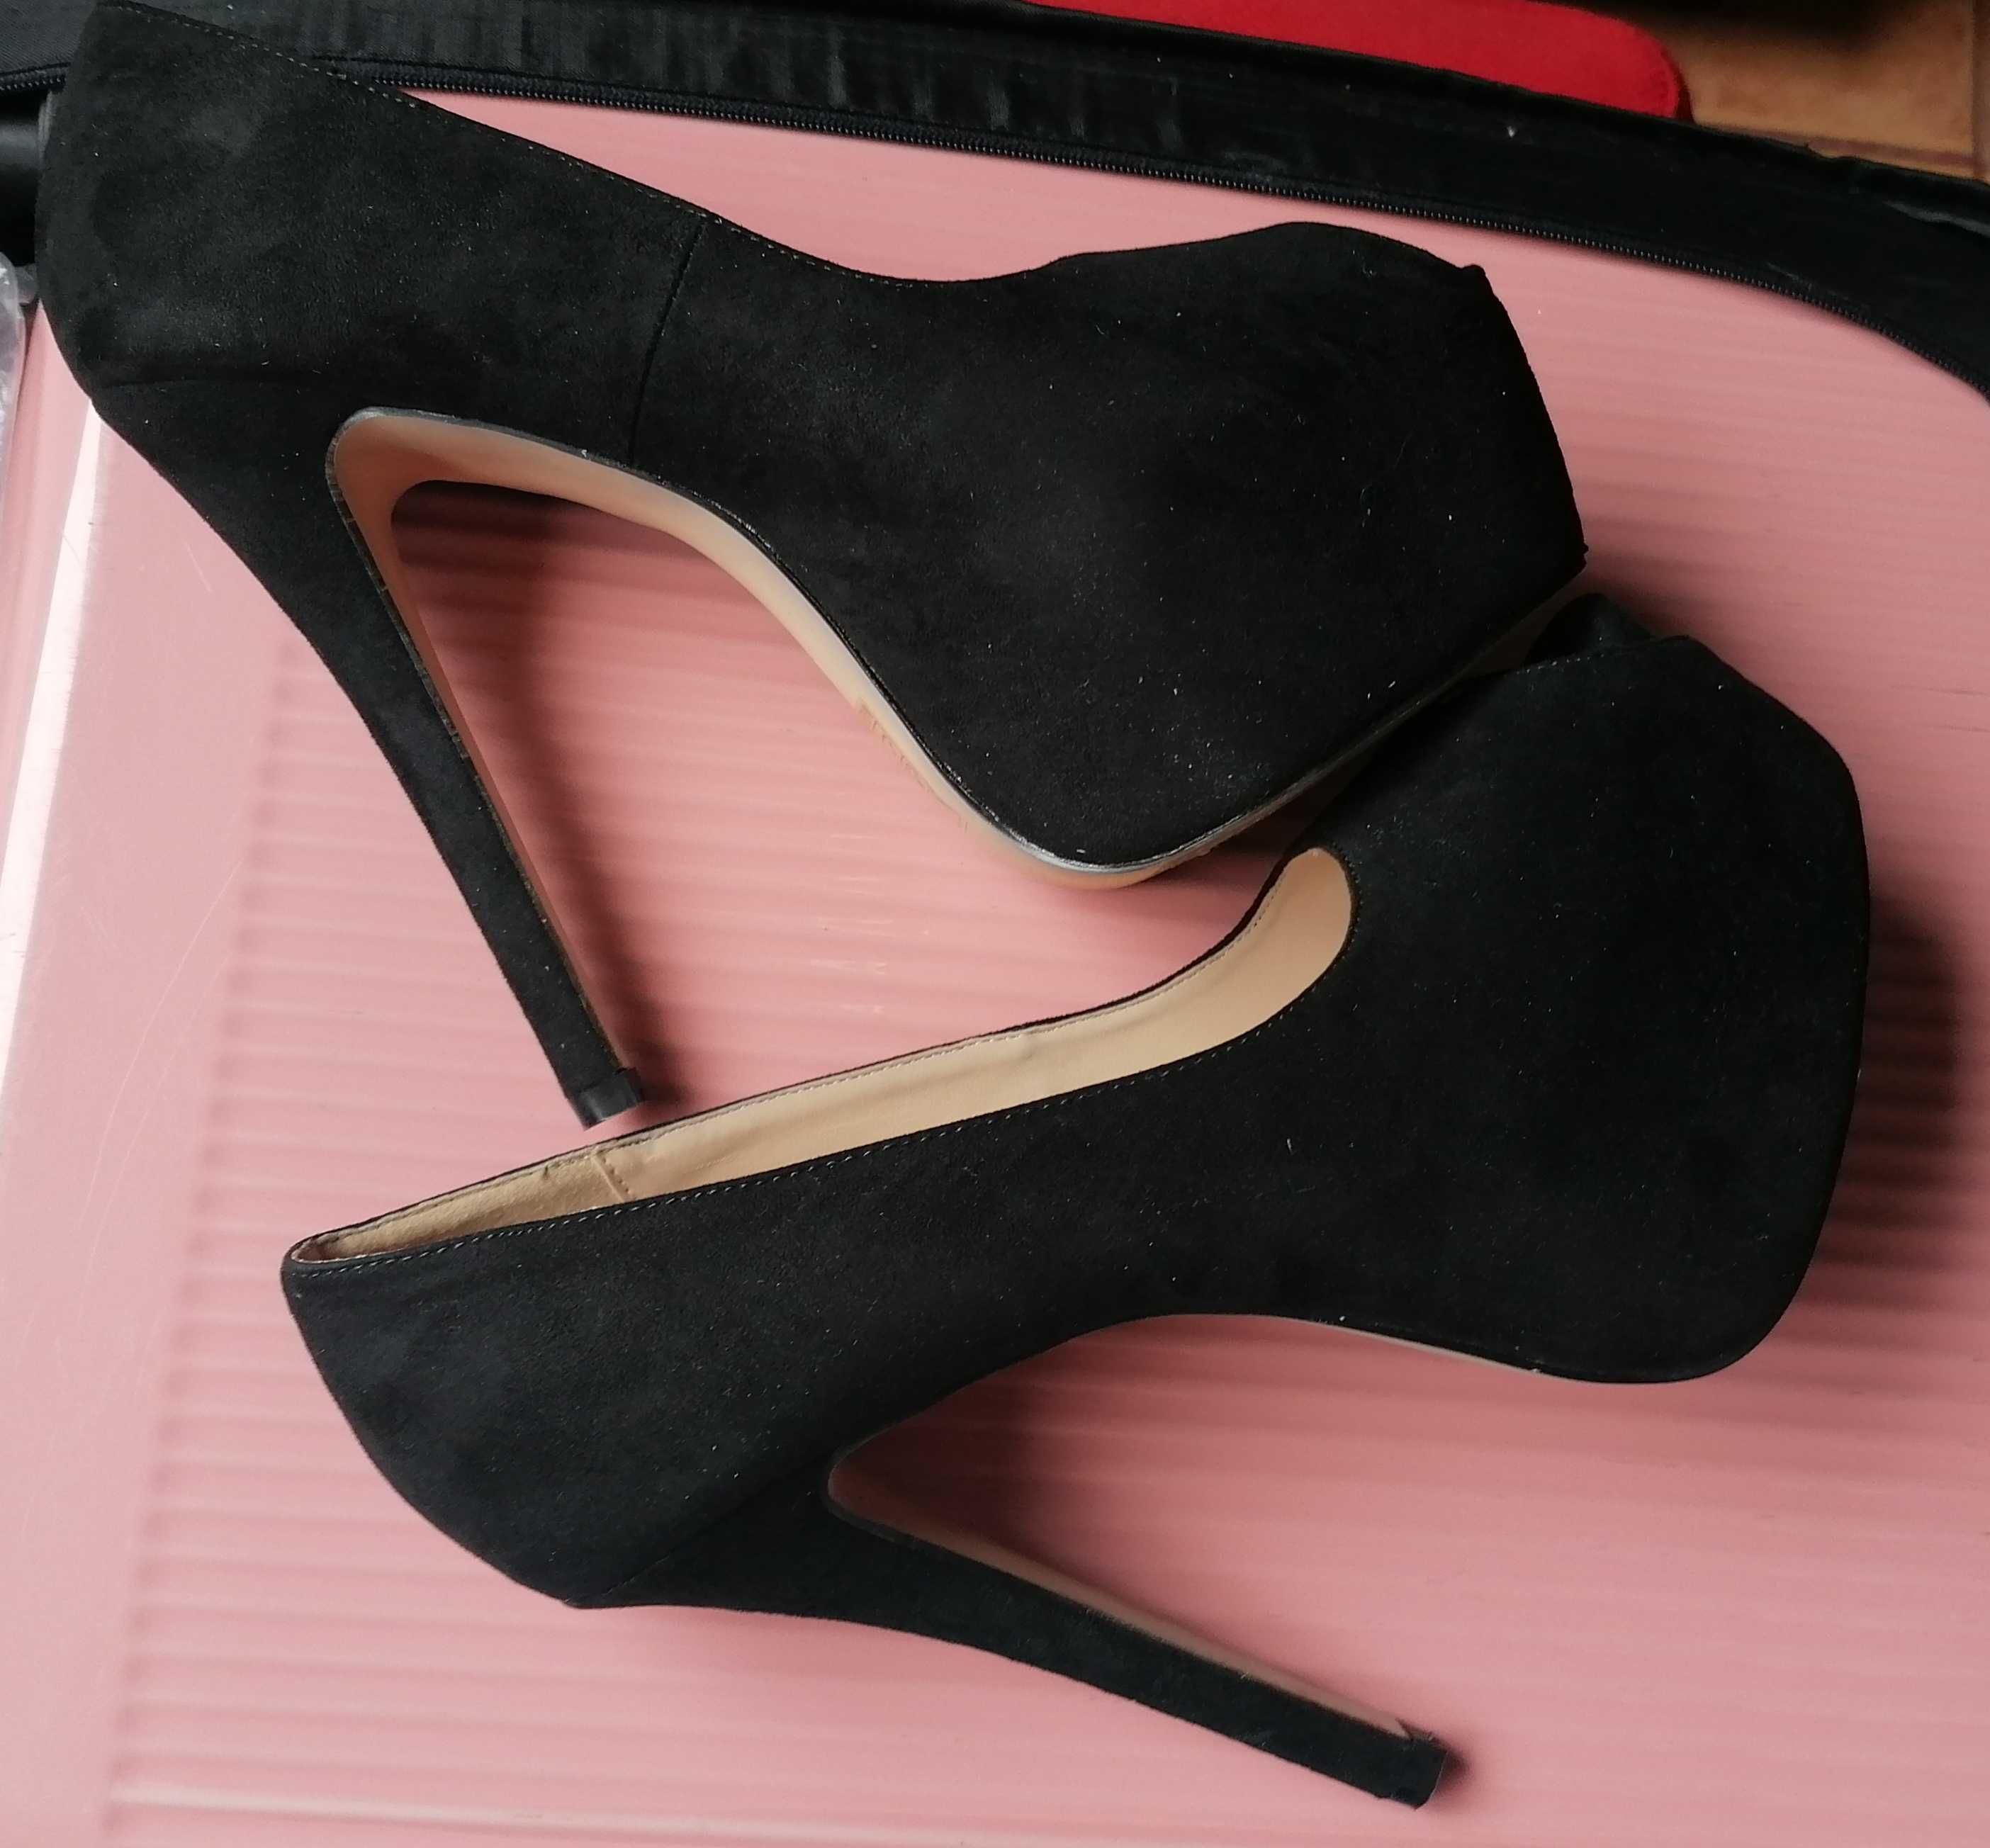 Sapatos Senhora pretos